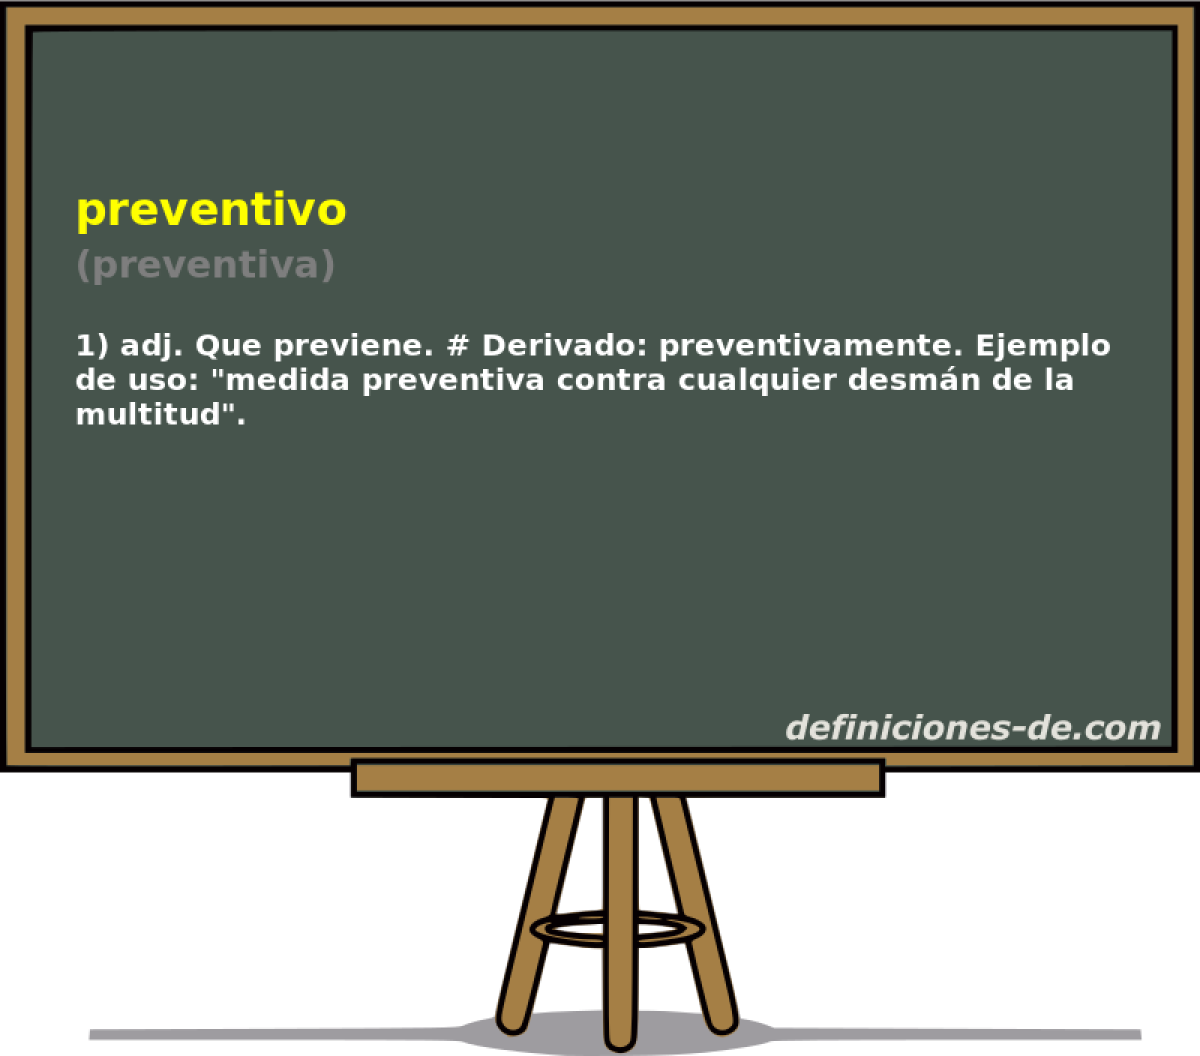 preventivo (preventiva)